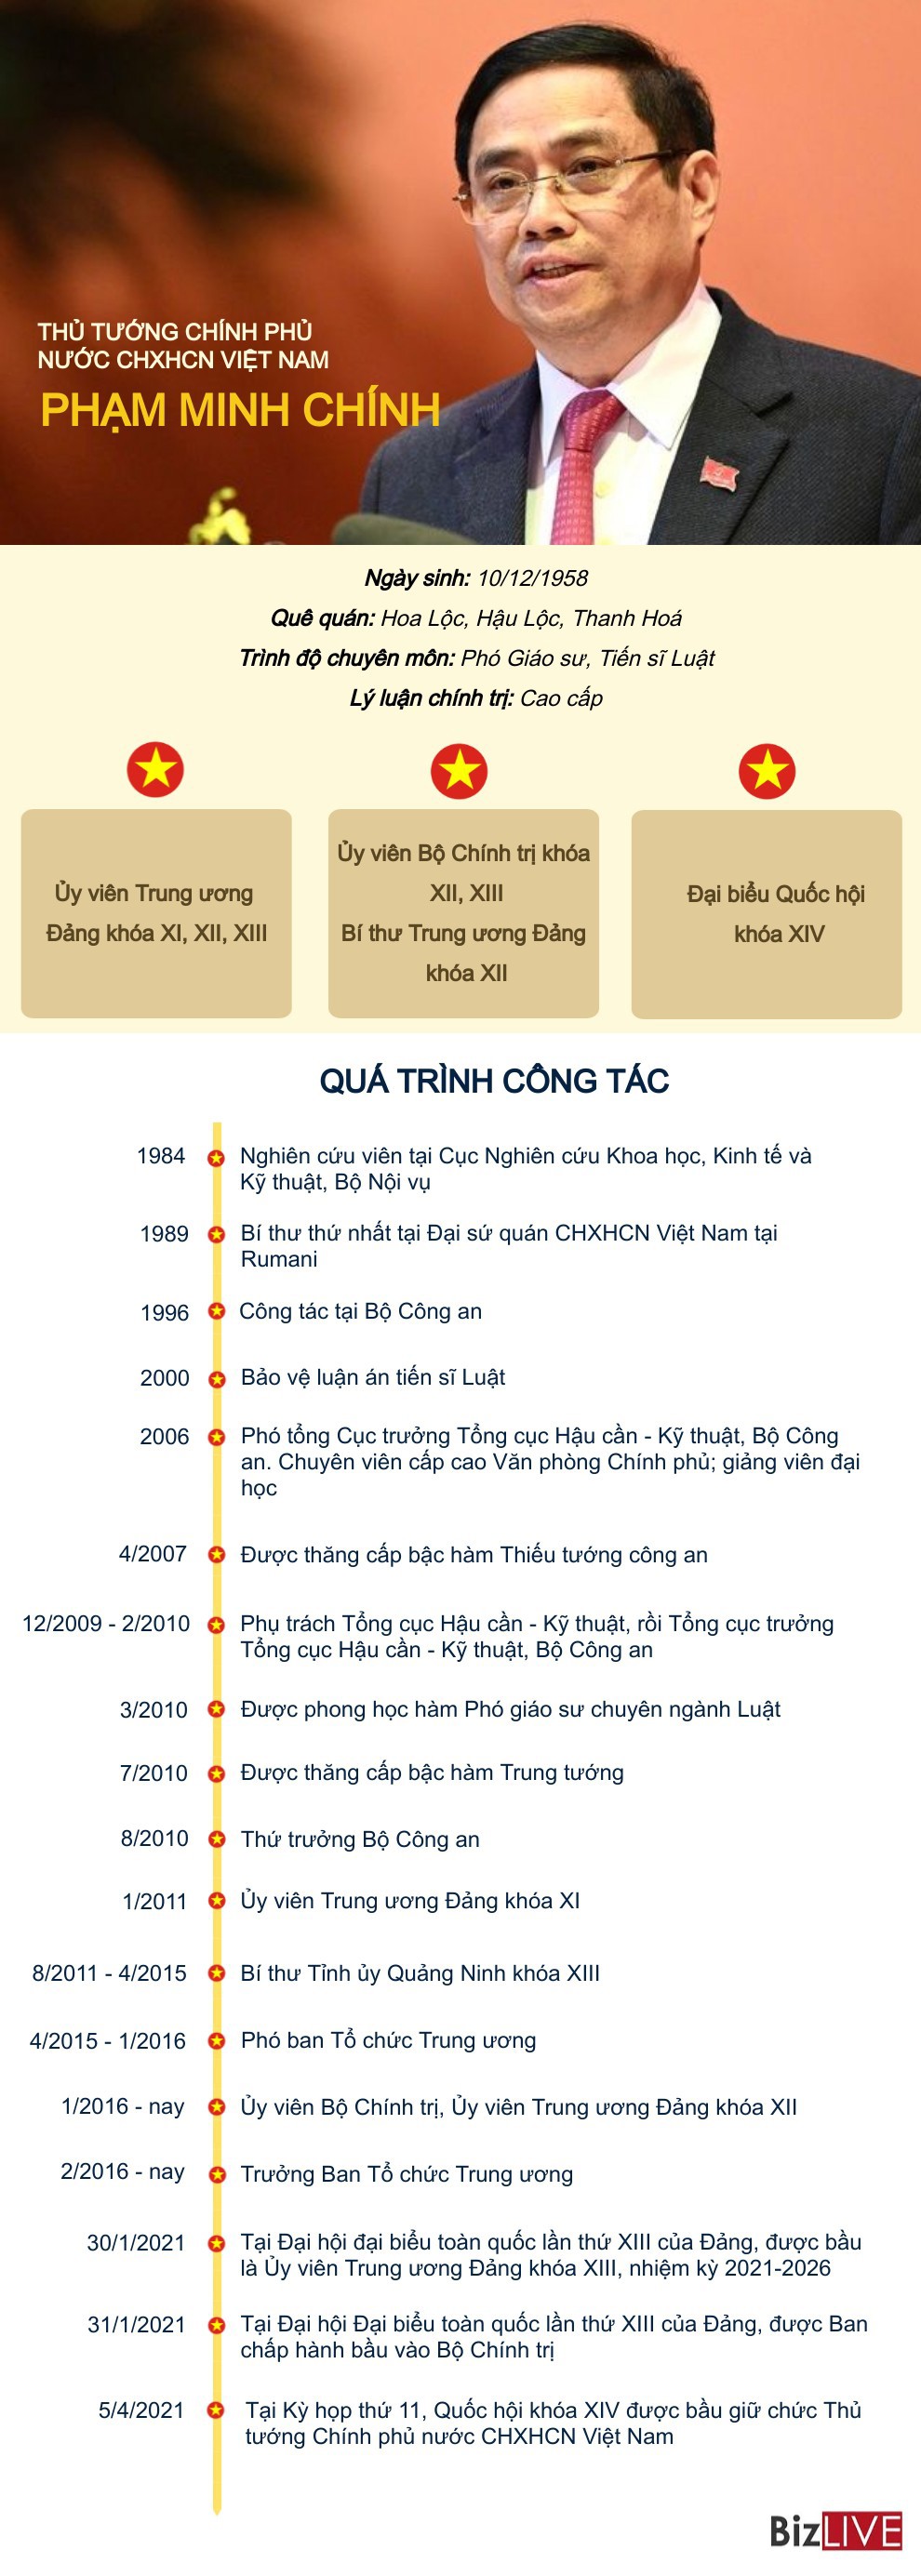 [Infographic] Tiểu sử tân Thủ tướng Chính phủ Phạm Minh Chính - Ảnh 1